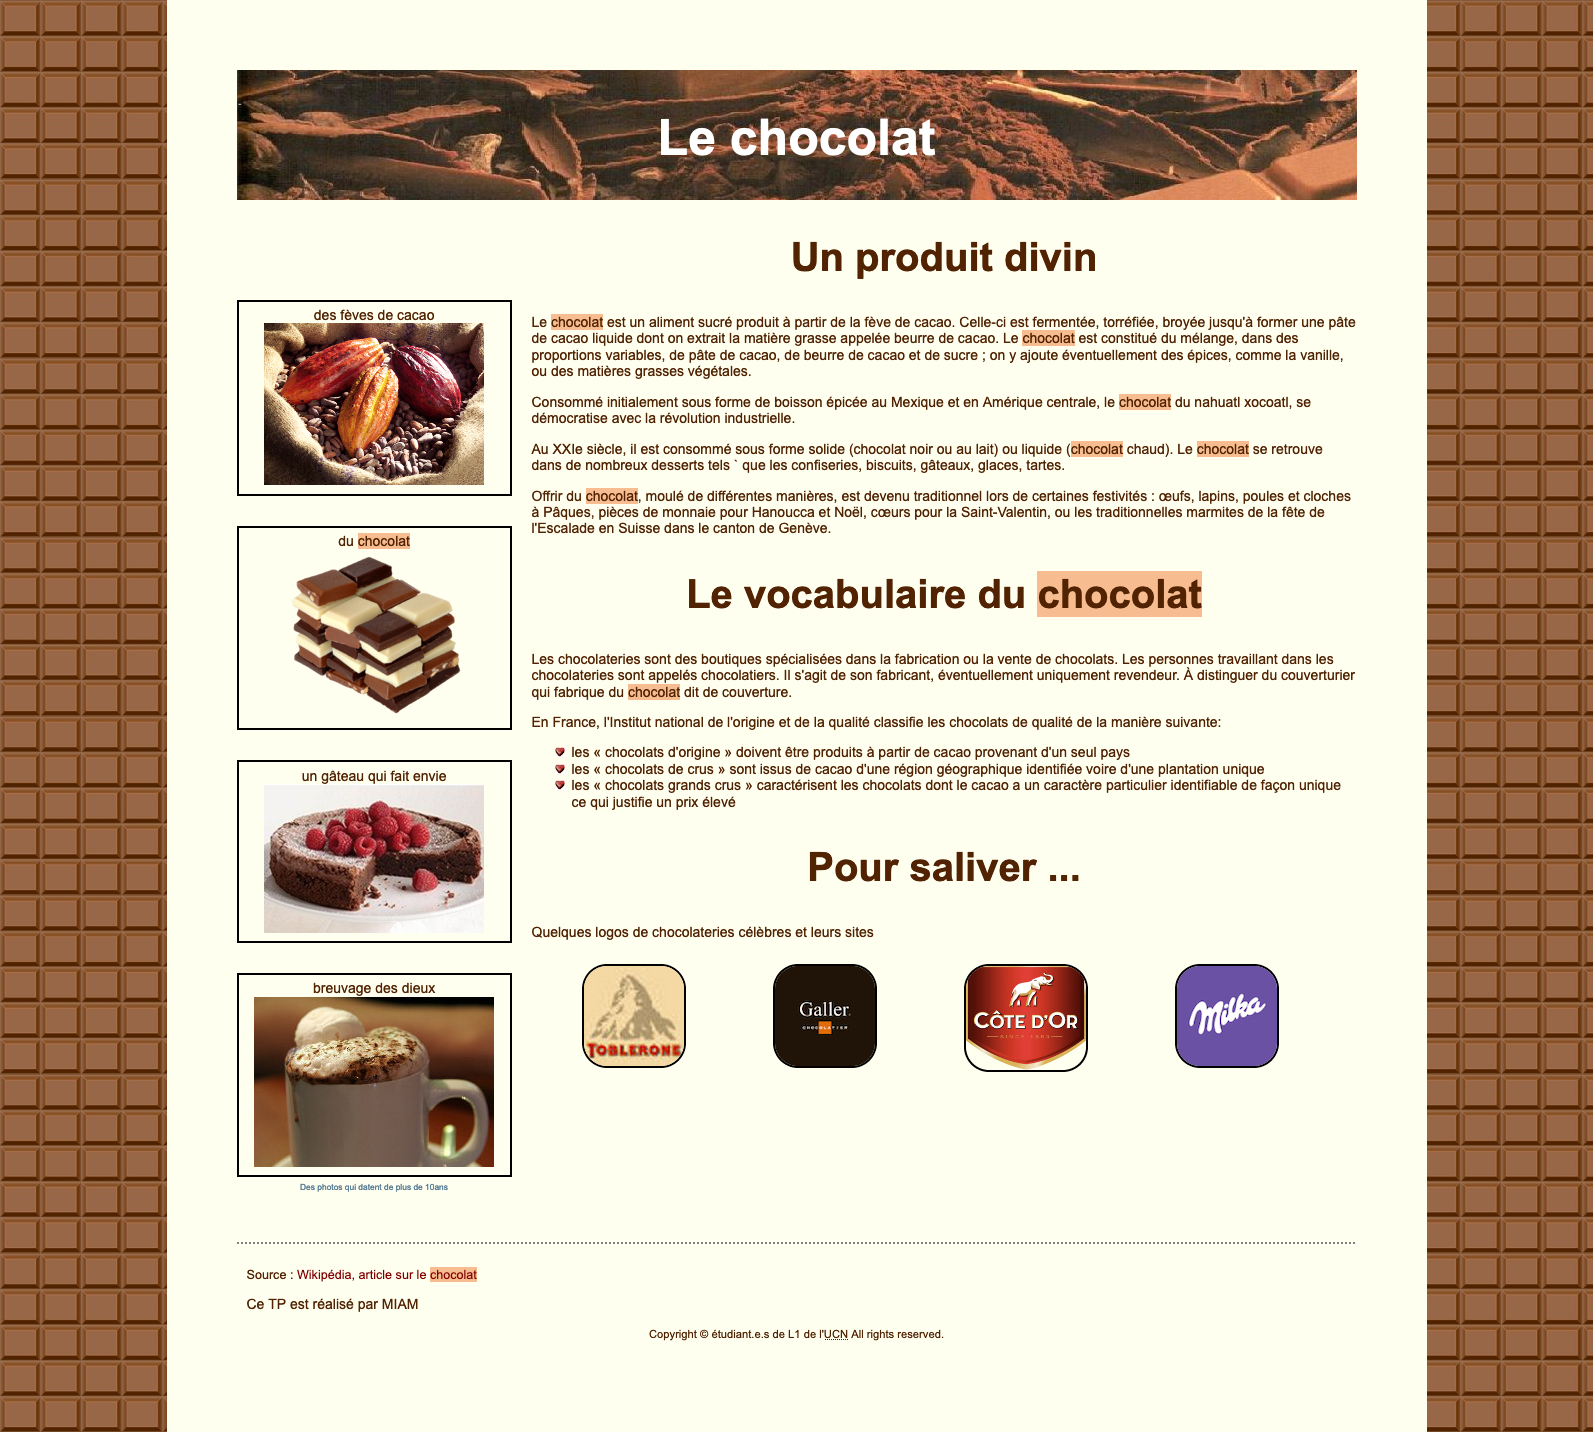 Capture d'écran de la page sur le chocolat